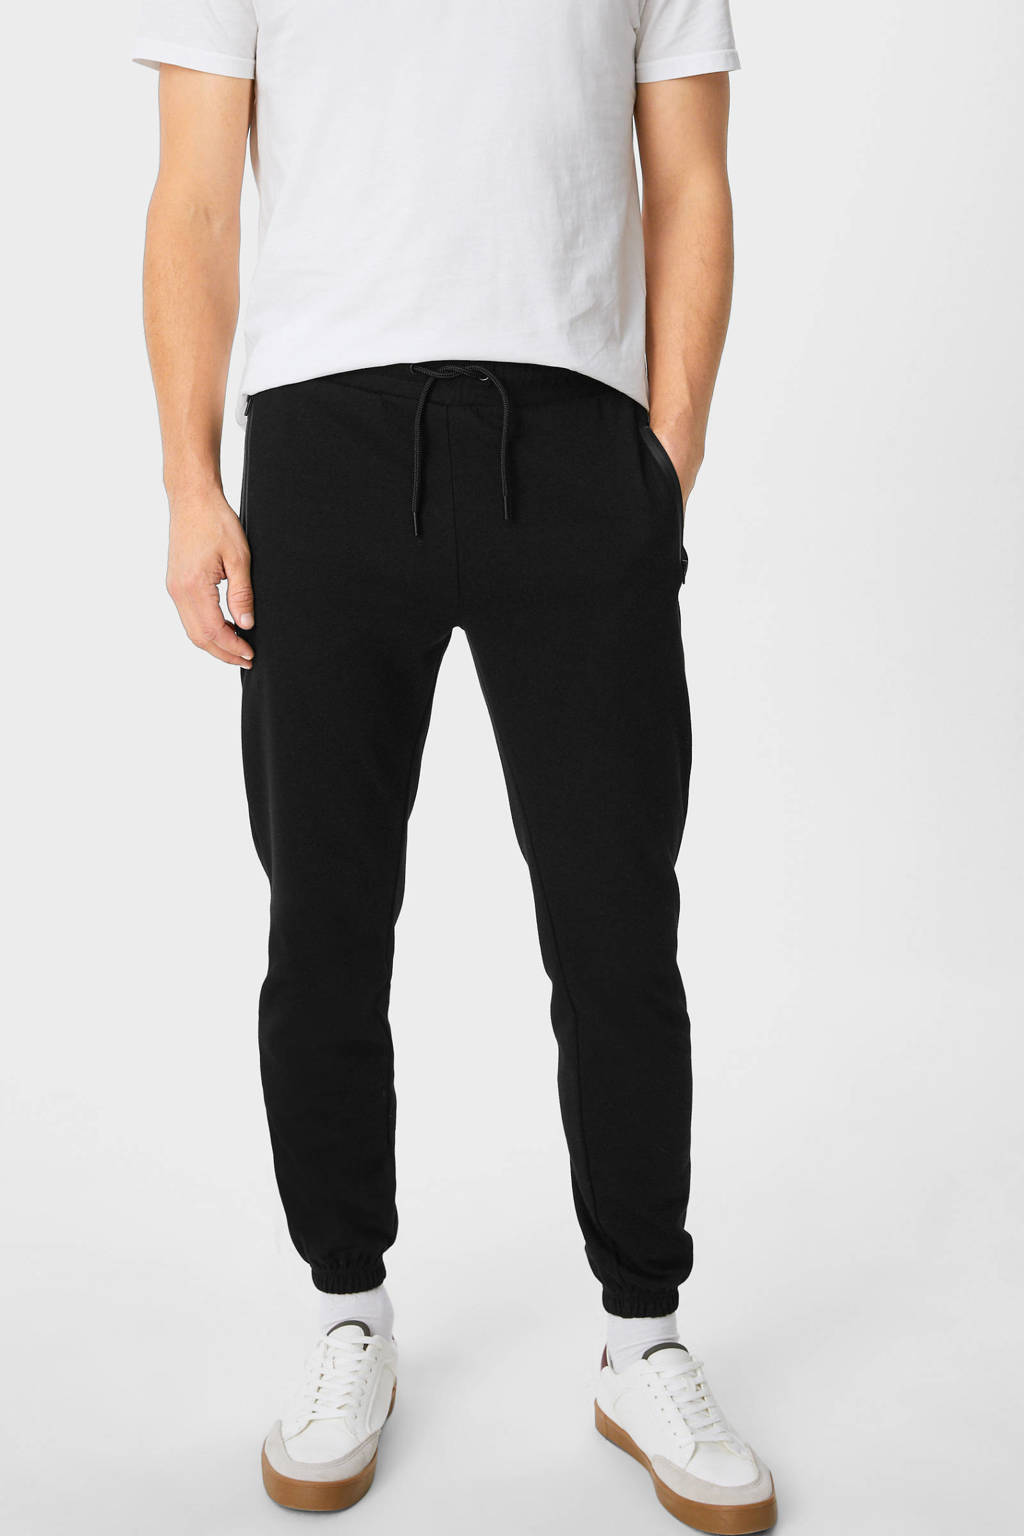 Zwarte heren C&A regular fit joggingbroek van sweat materiaal met elastische tailleband met koord